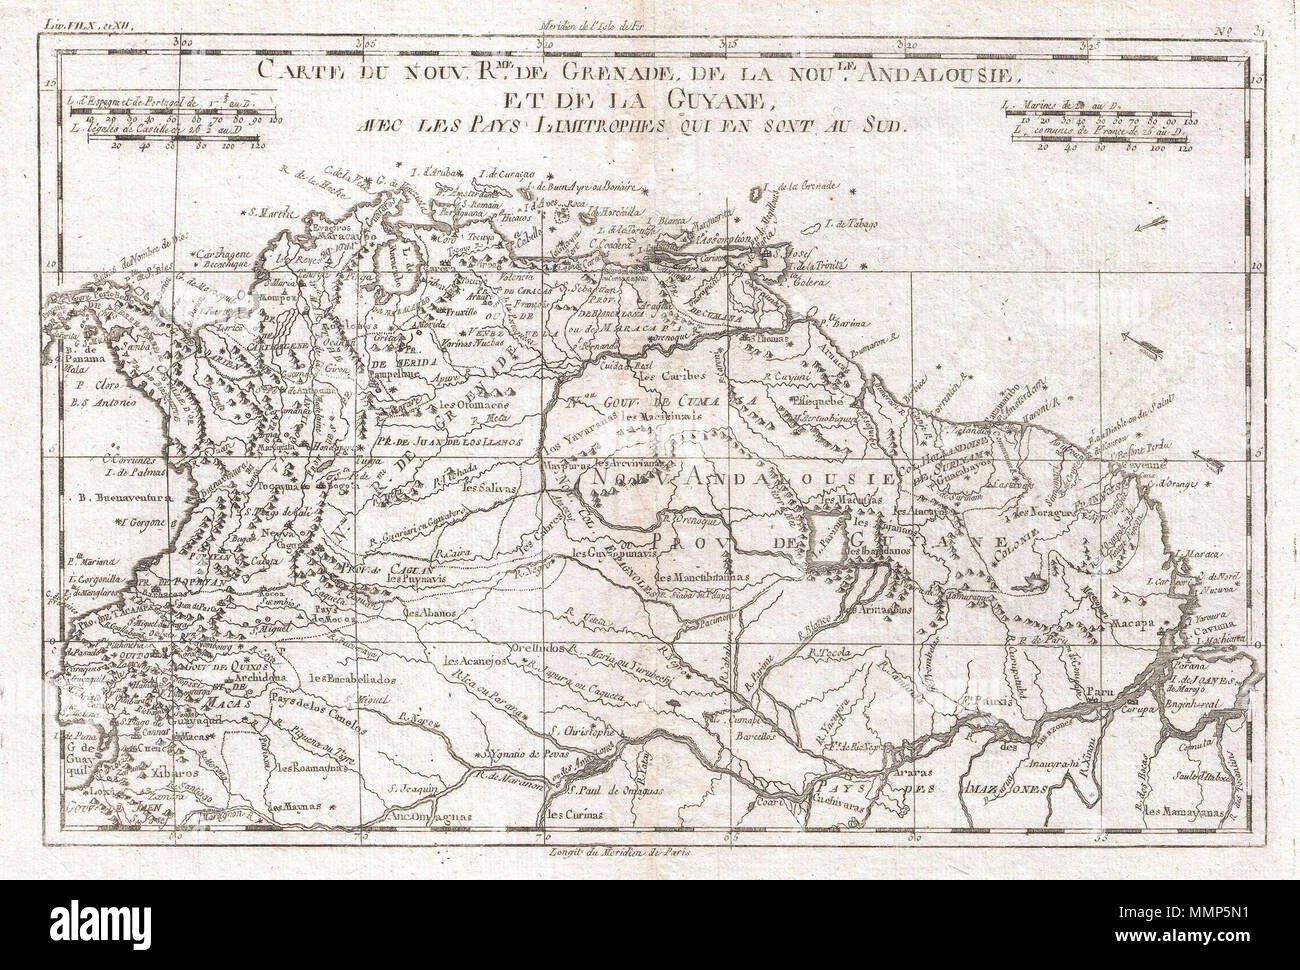 . Englisch: Ein schönes Beispiel für Rigobert Bonne und Guilleme Raynal's 1780 Karte des nördlichen Südamerika. Diese Karte umfasst das Gebiet, das sich vom Modernen Ecuador, Panama, Kolumbien, Venezuela, Guyana, Surinam, und dem nördlichen Teil von Brasilien. Sehr detaillierte mit Fluss und Gebirge, sondern umfasst auch die mythischen See Parime; es war hier Schatzsuche Entdecker, einschließlich Sir Walter Raleigh, nachdem man glaubte, die semi-mythischen Stadt El Dorado finden konnte. Bietet auch wichtige Städte und Häfen, zusammen mit Wind und Meer aktuelle Richtungen, Riffe und andere underwa Stockfoto